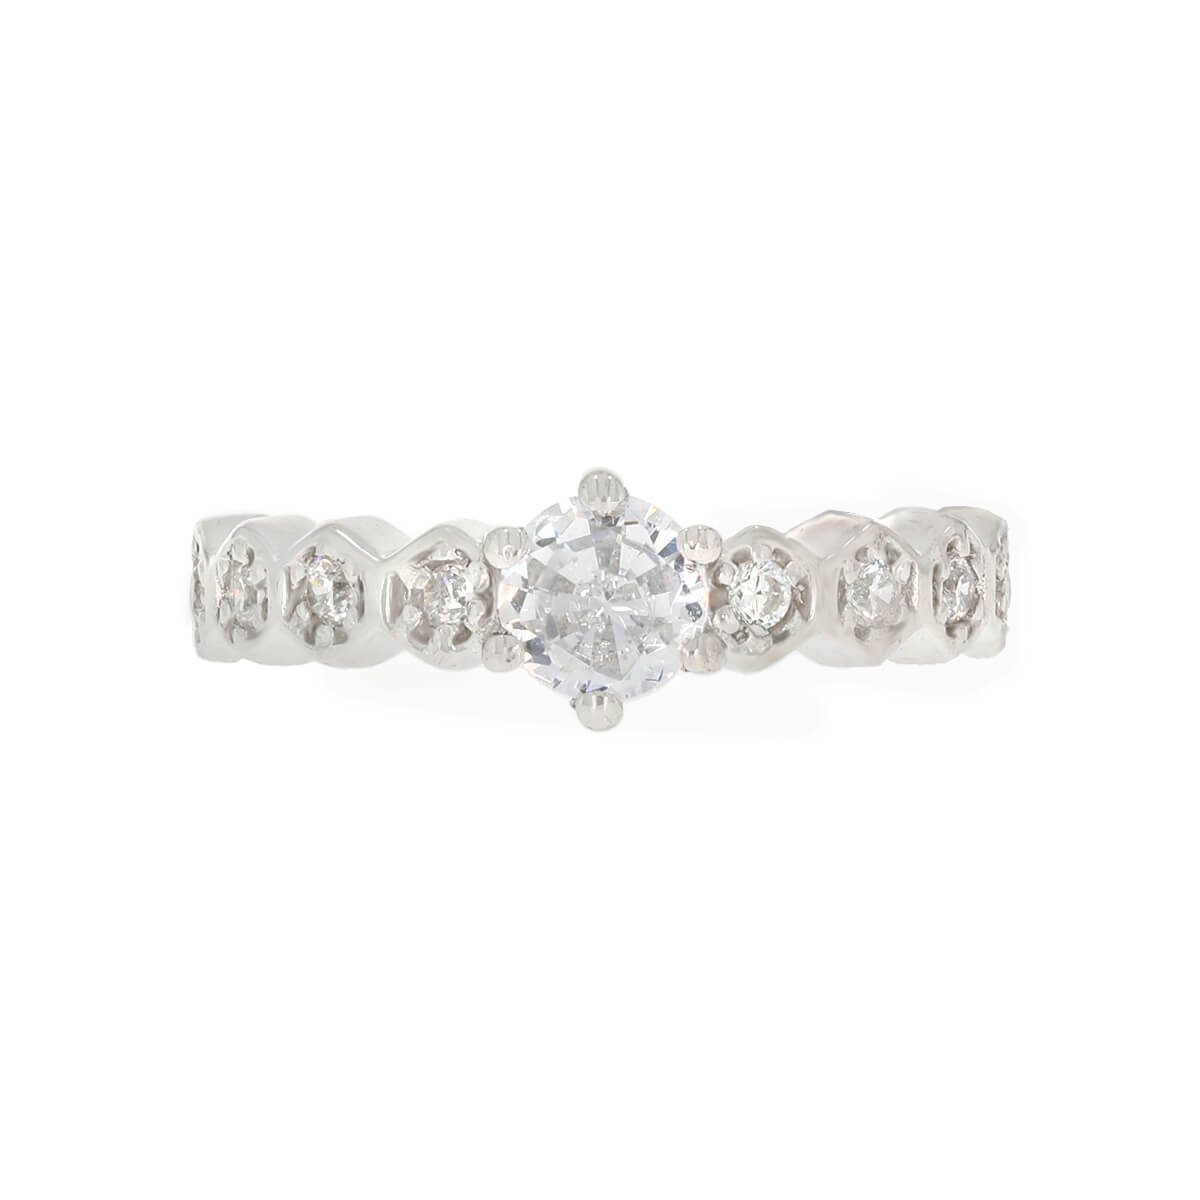 Stunning Elegant Diamond Ring